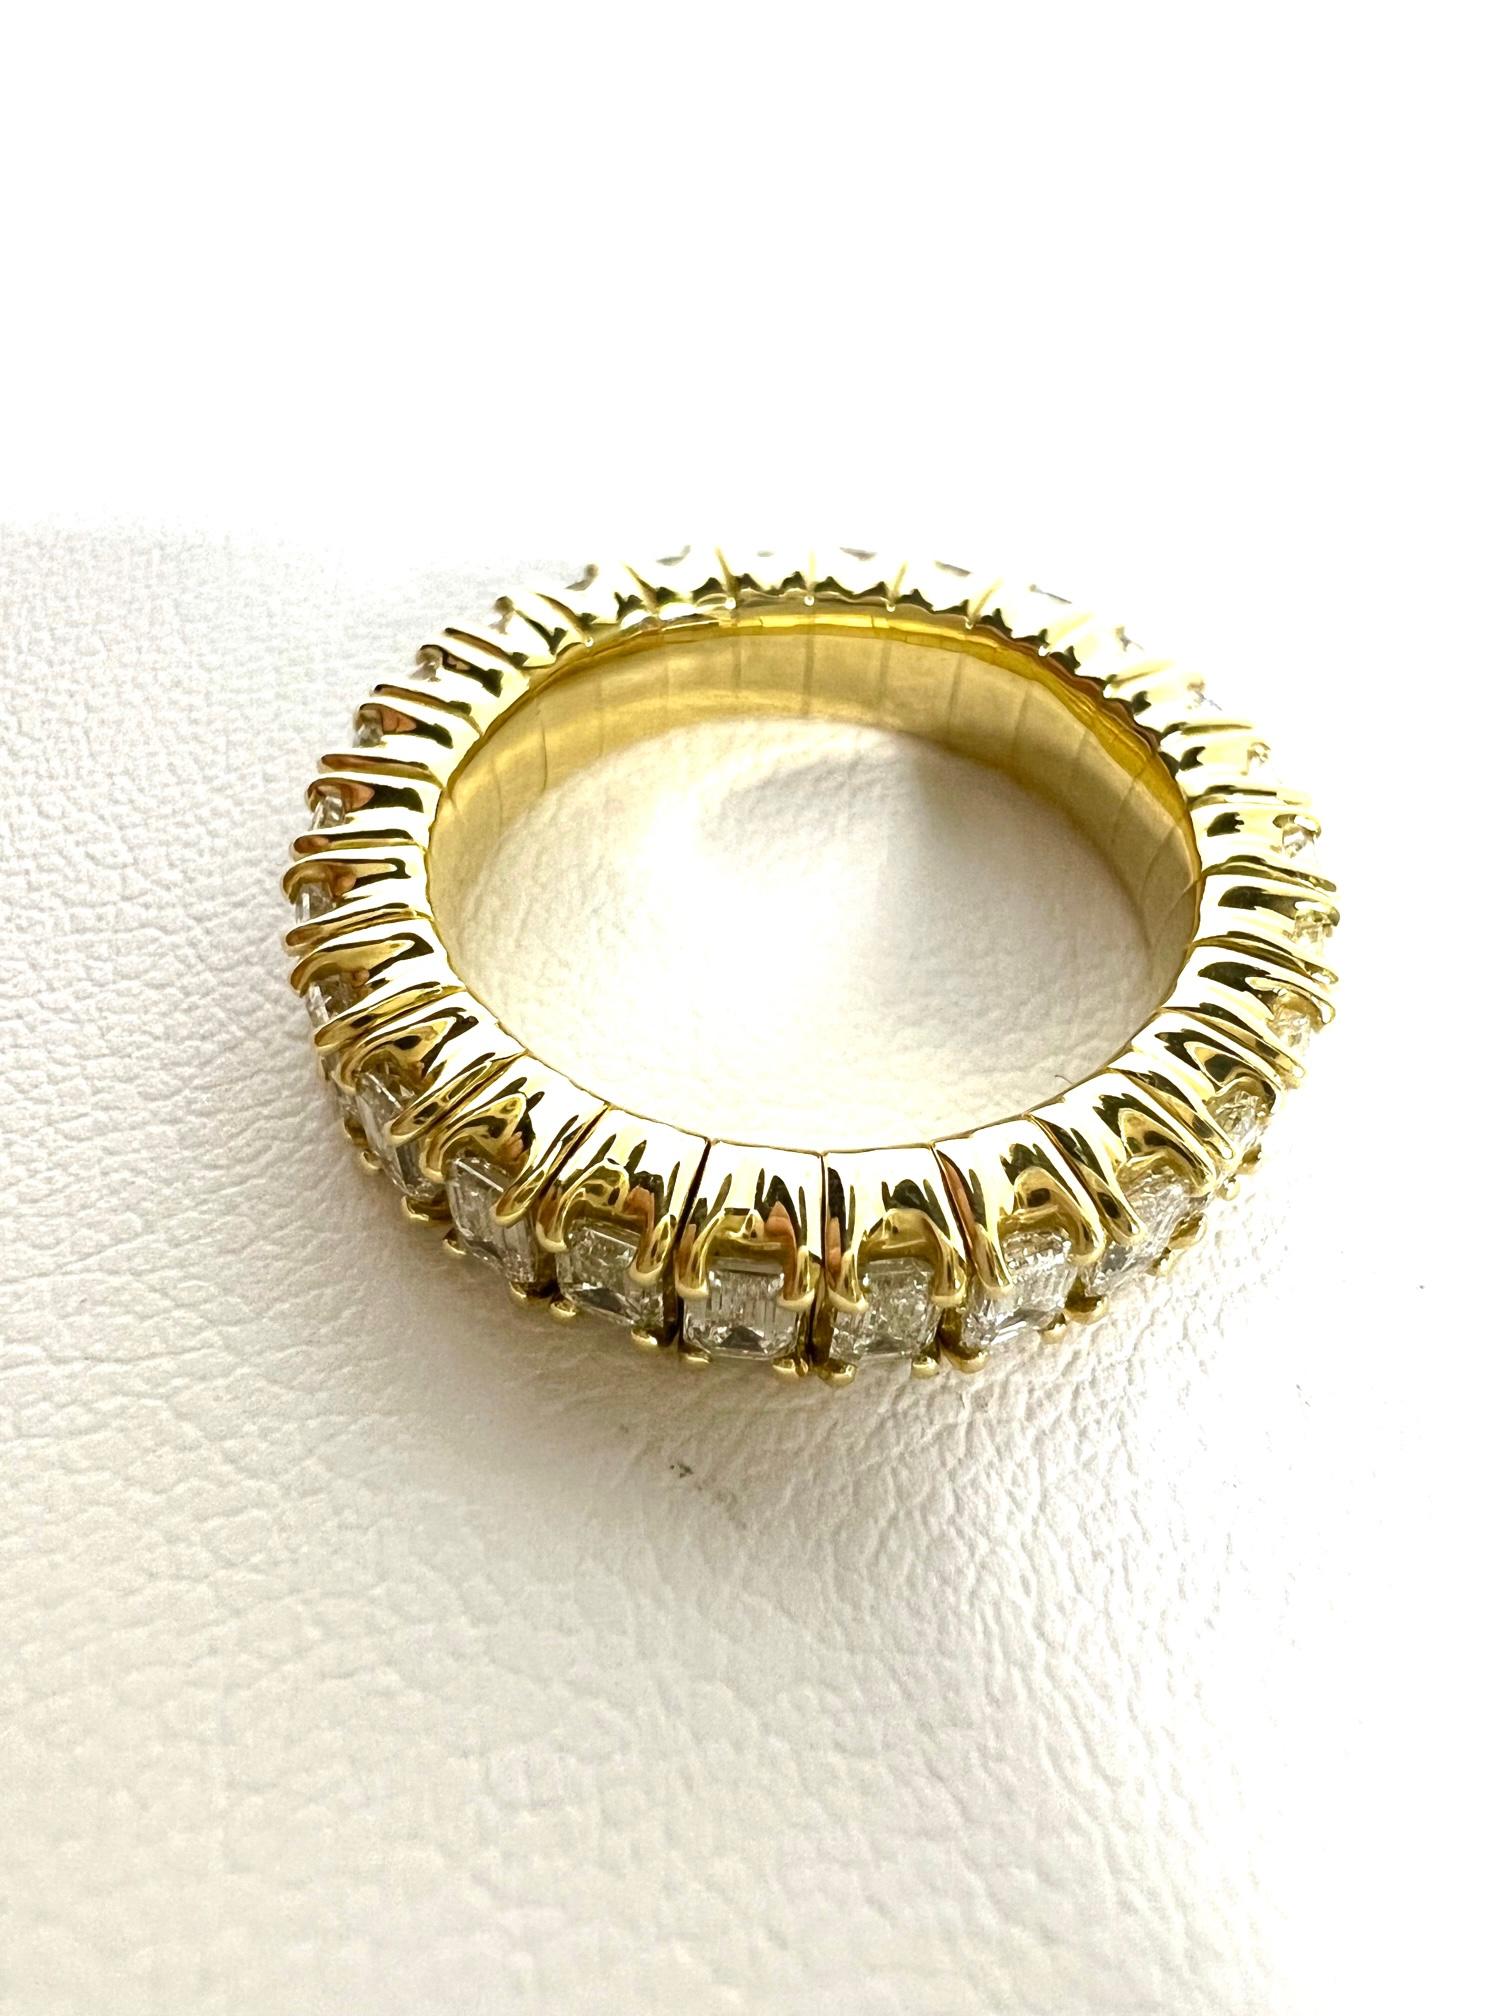 Thomas Leyser est réputé pour ses créations de bijoux contemporains utilisant des pierres précieuses fines.

Bague mémoire flexible en or rouge 18k 6,3gr. avec diamants baguettes 2,65cts. I(SI).

Taille de l'anneau : Flexible 51-61 (5,7-9-5). 